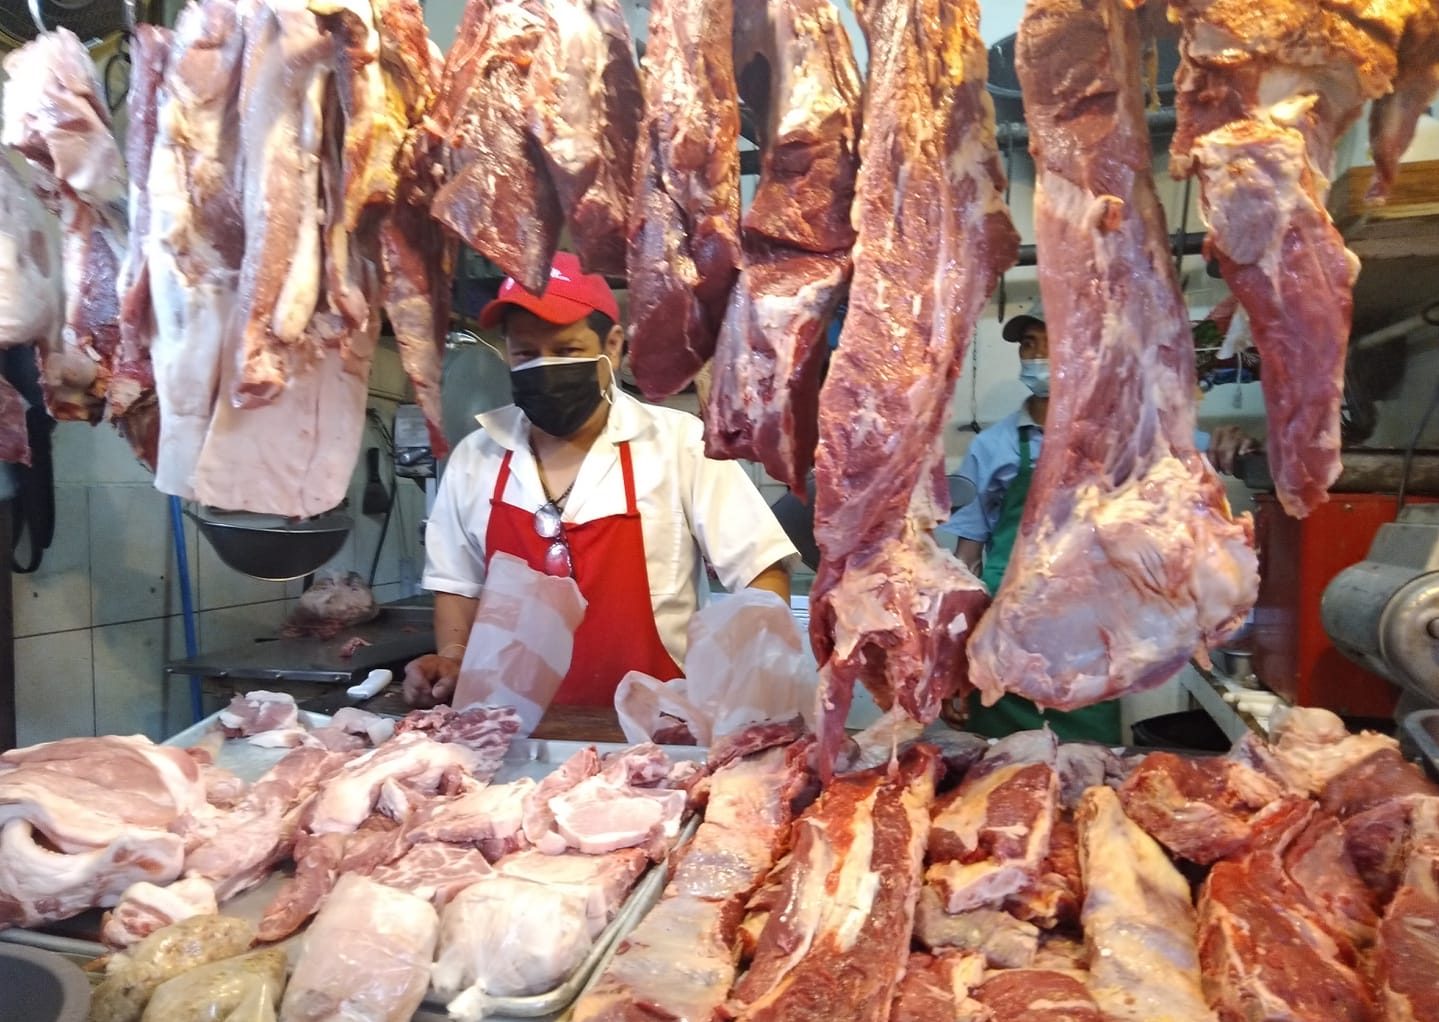 Precio de la carne de res aumenta hasta 10 lempiras en mercados